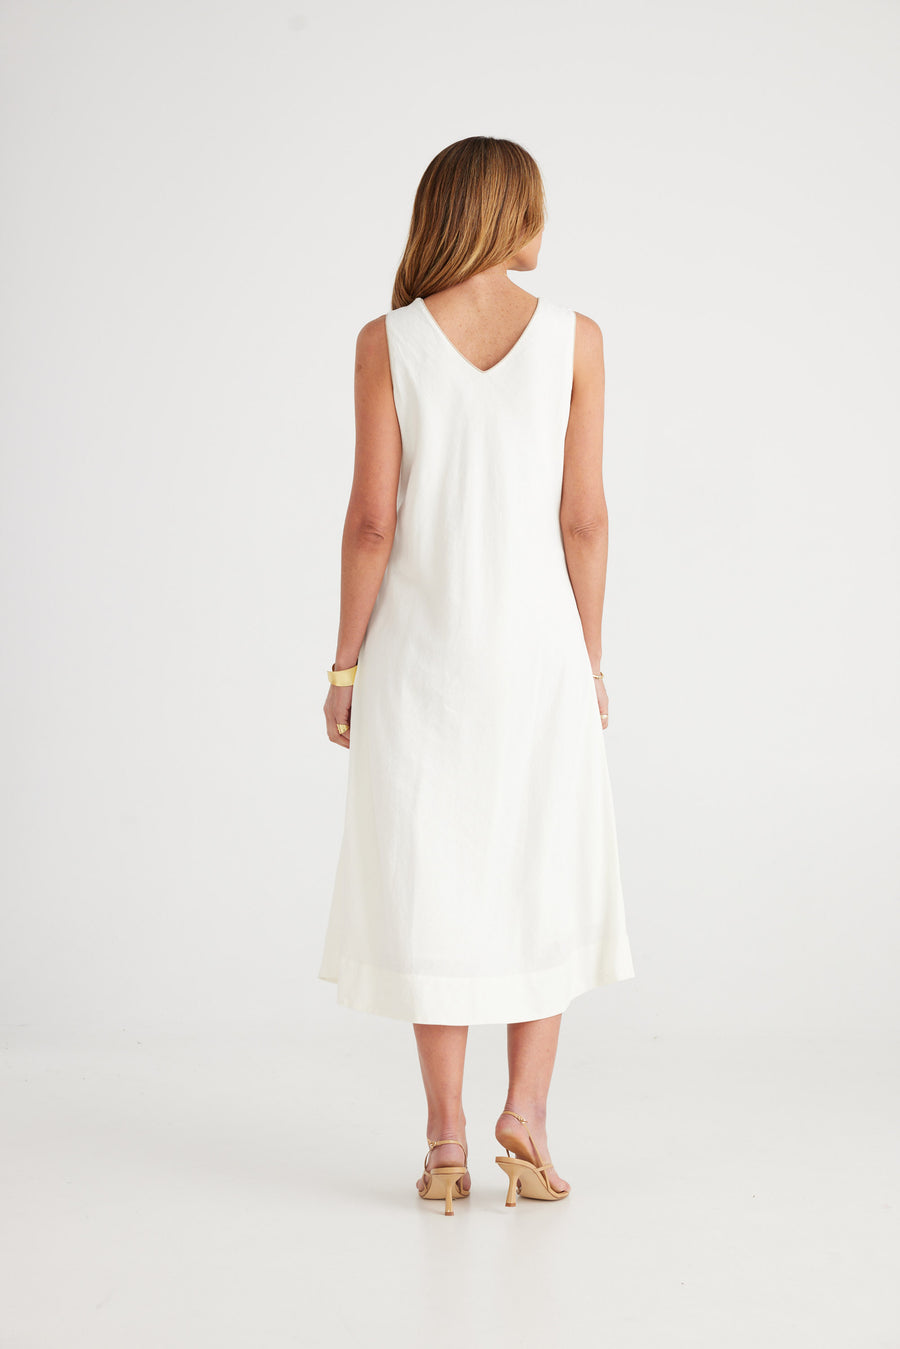 Lita Dress - White + Natural